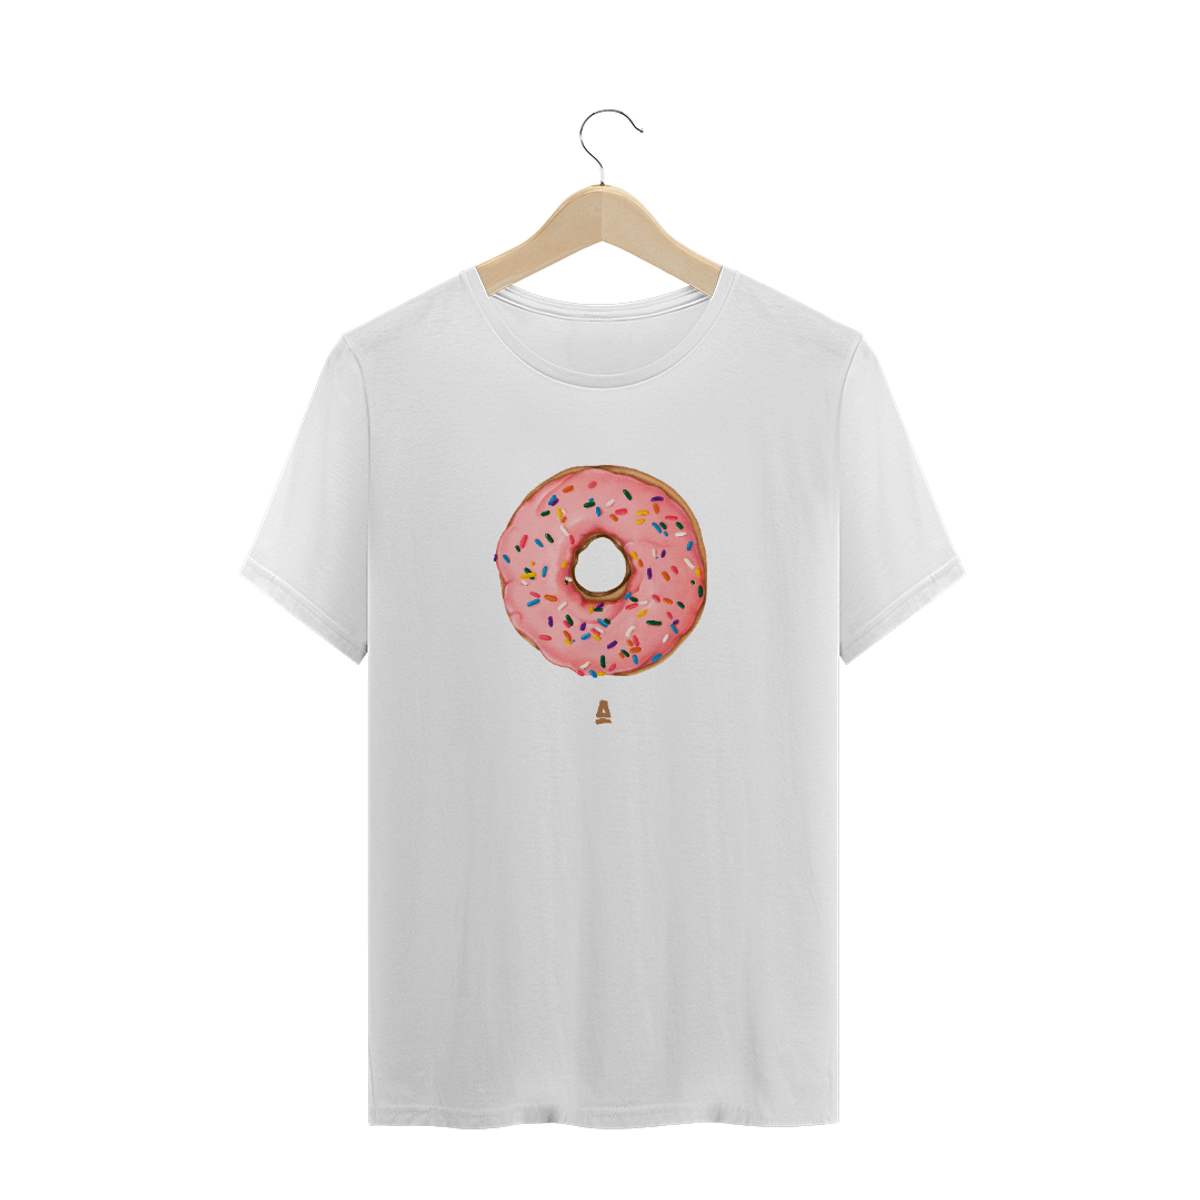 Nome do produto: Donut